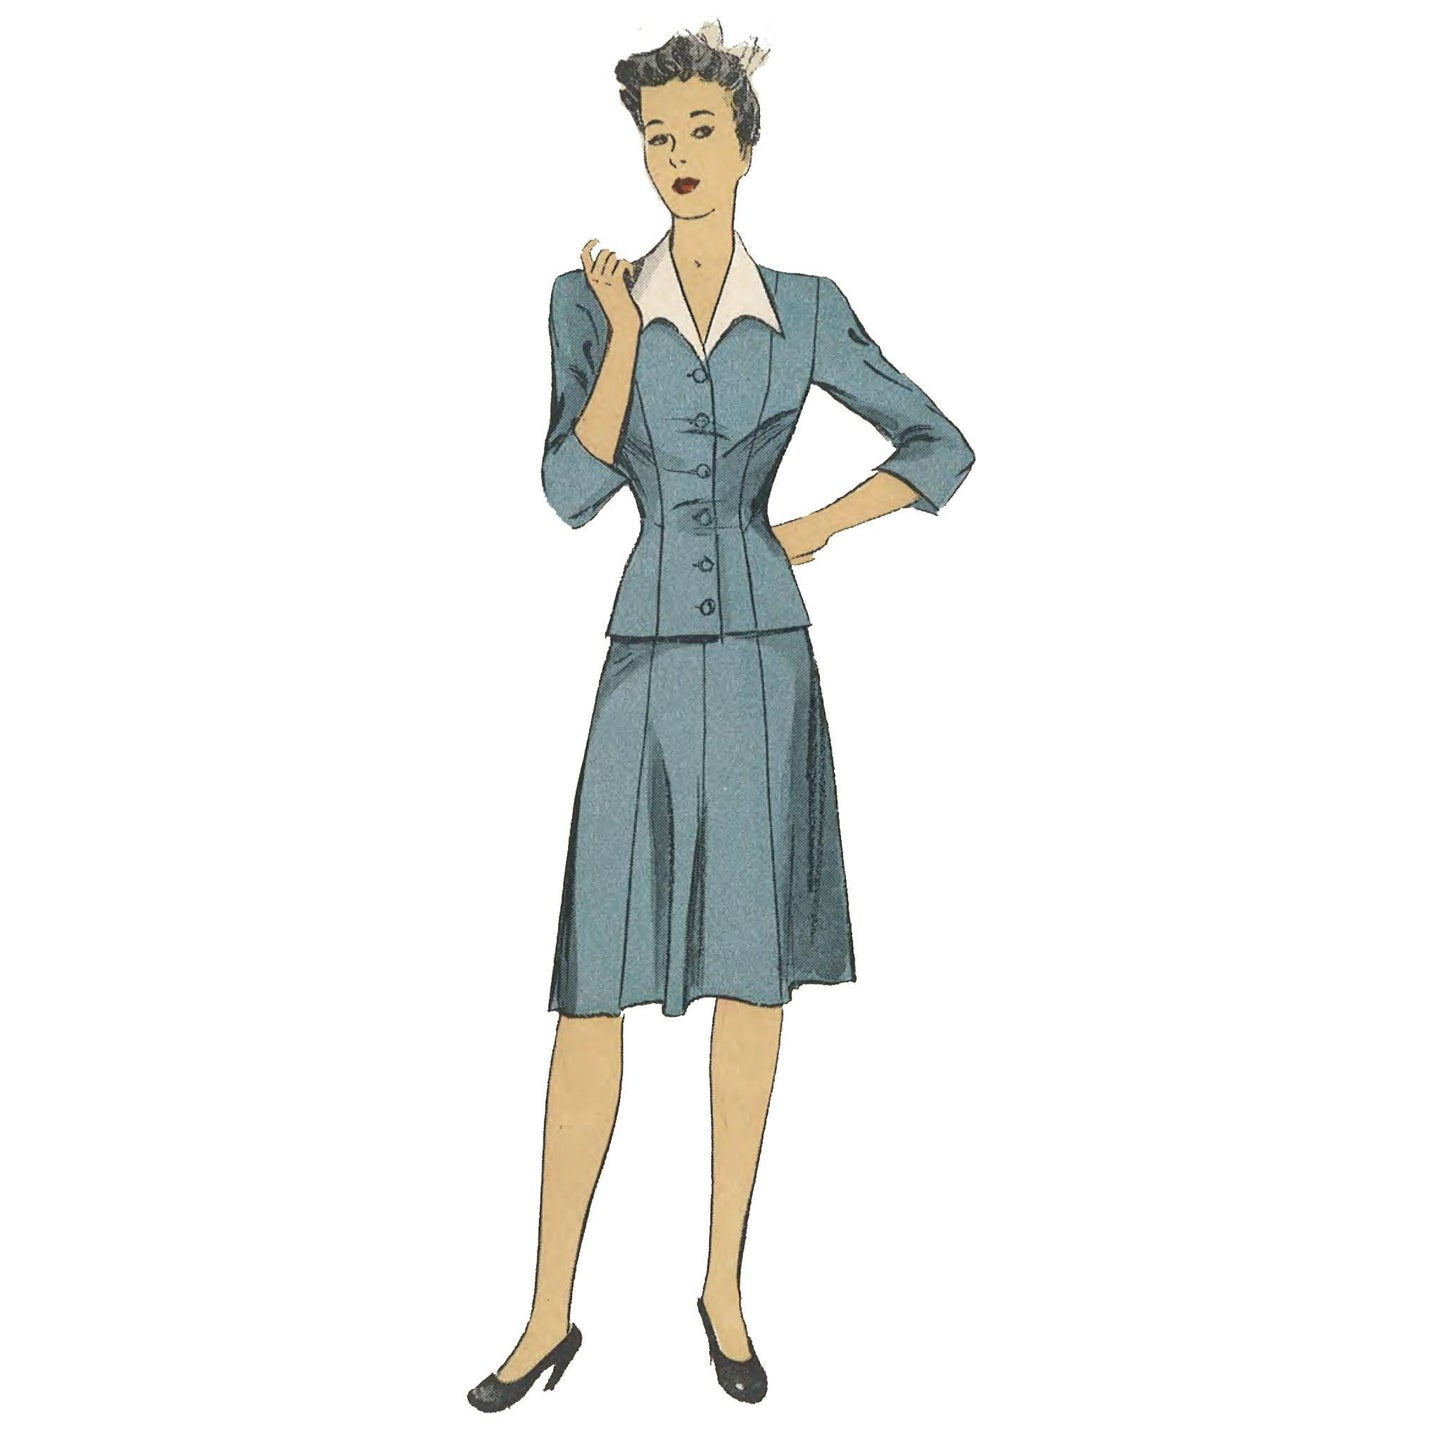 Woman wearing 1940s 2 piece dress.